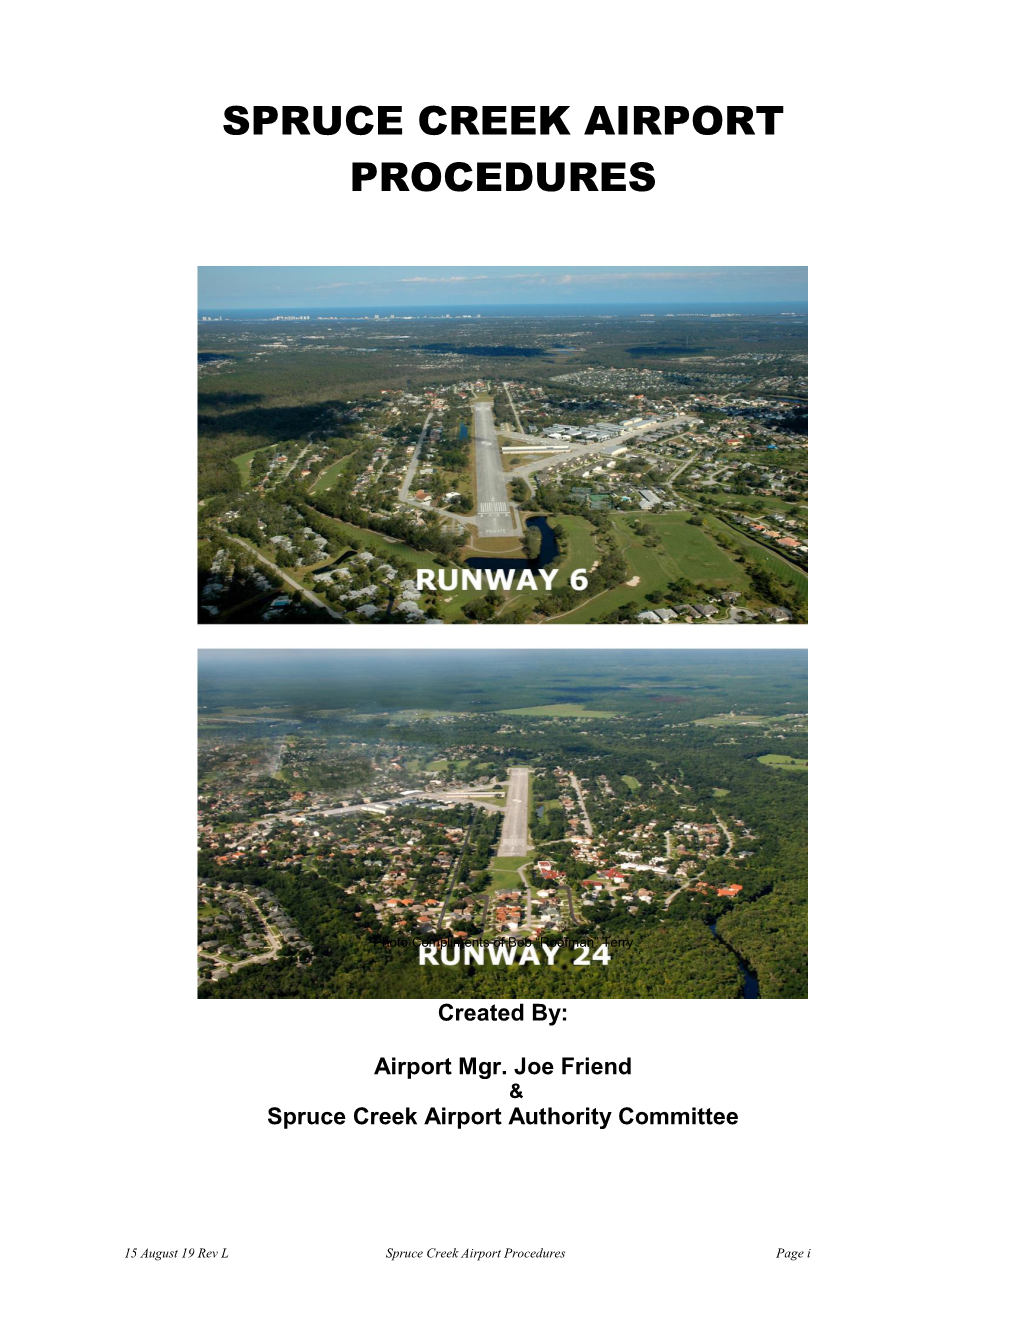 Spruce Creek Airport Procedures